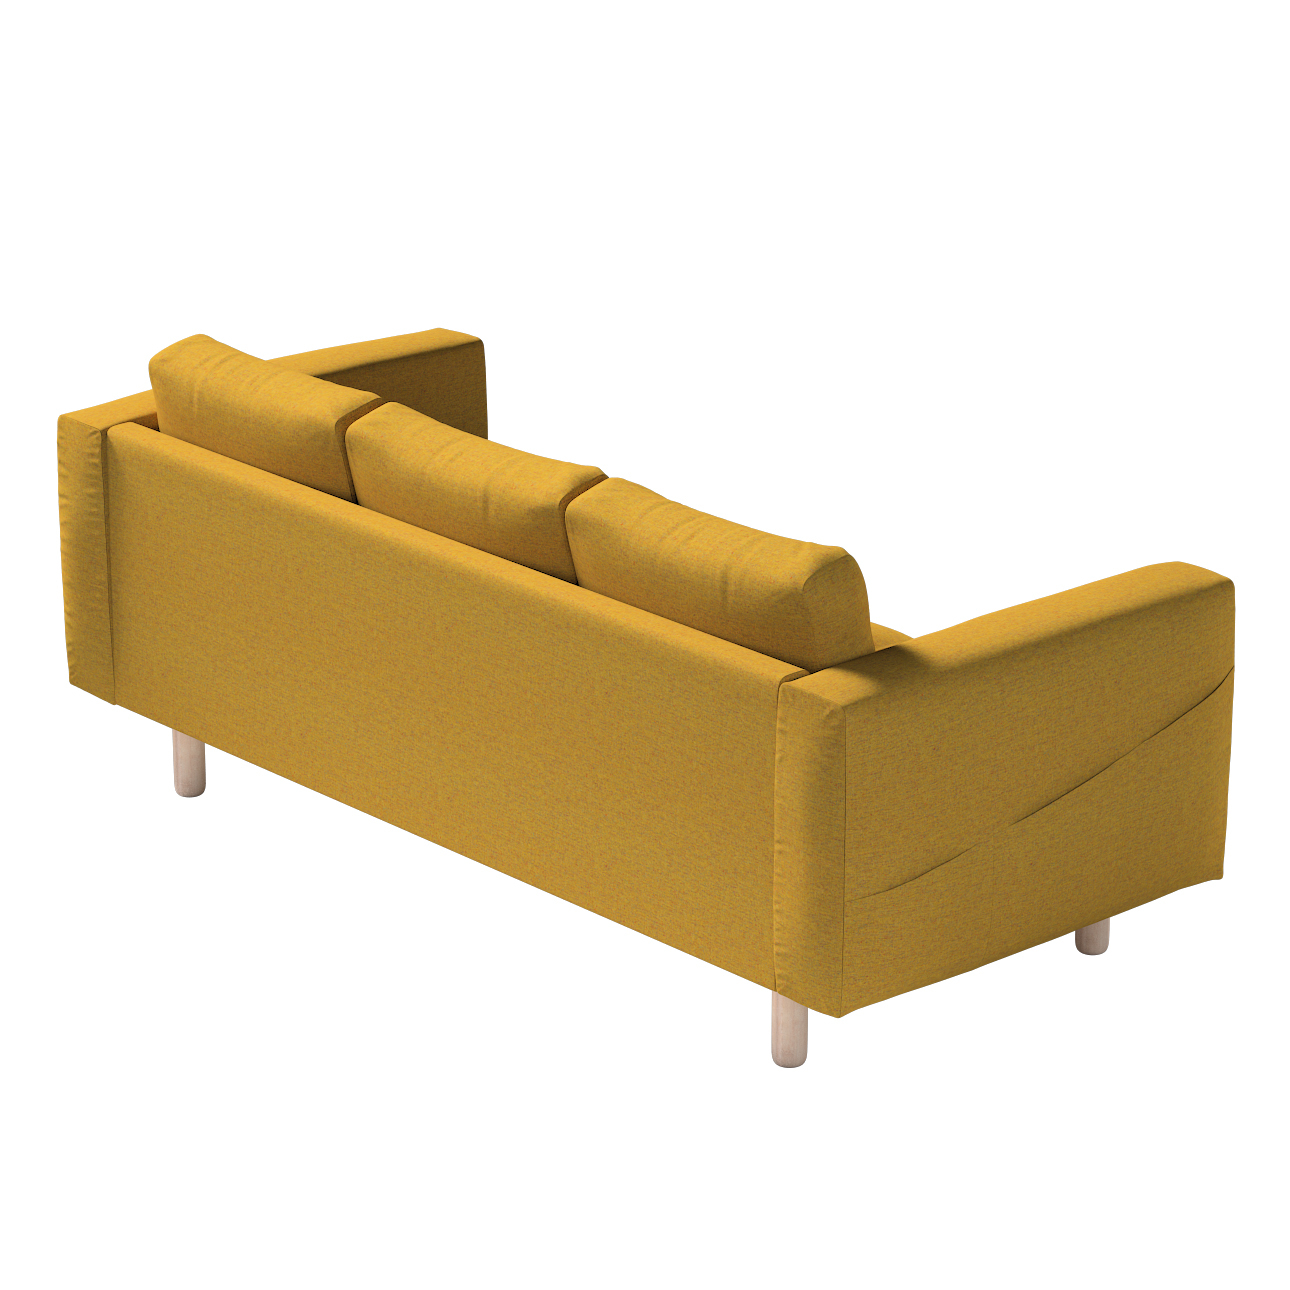 Bezug für Norsborg 3-Sitzer Sofa, gelb, Norsborg 3-Sitzer Sofabezug, Madrid günstig online kaufen